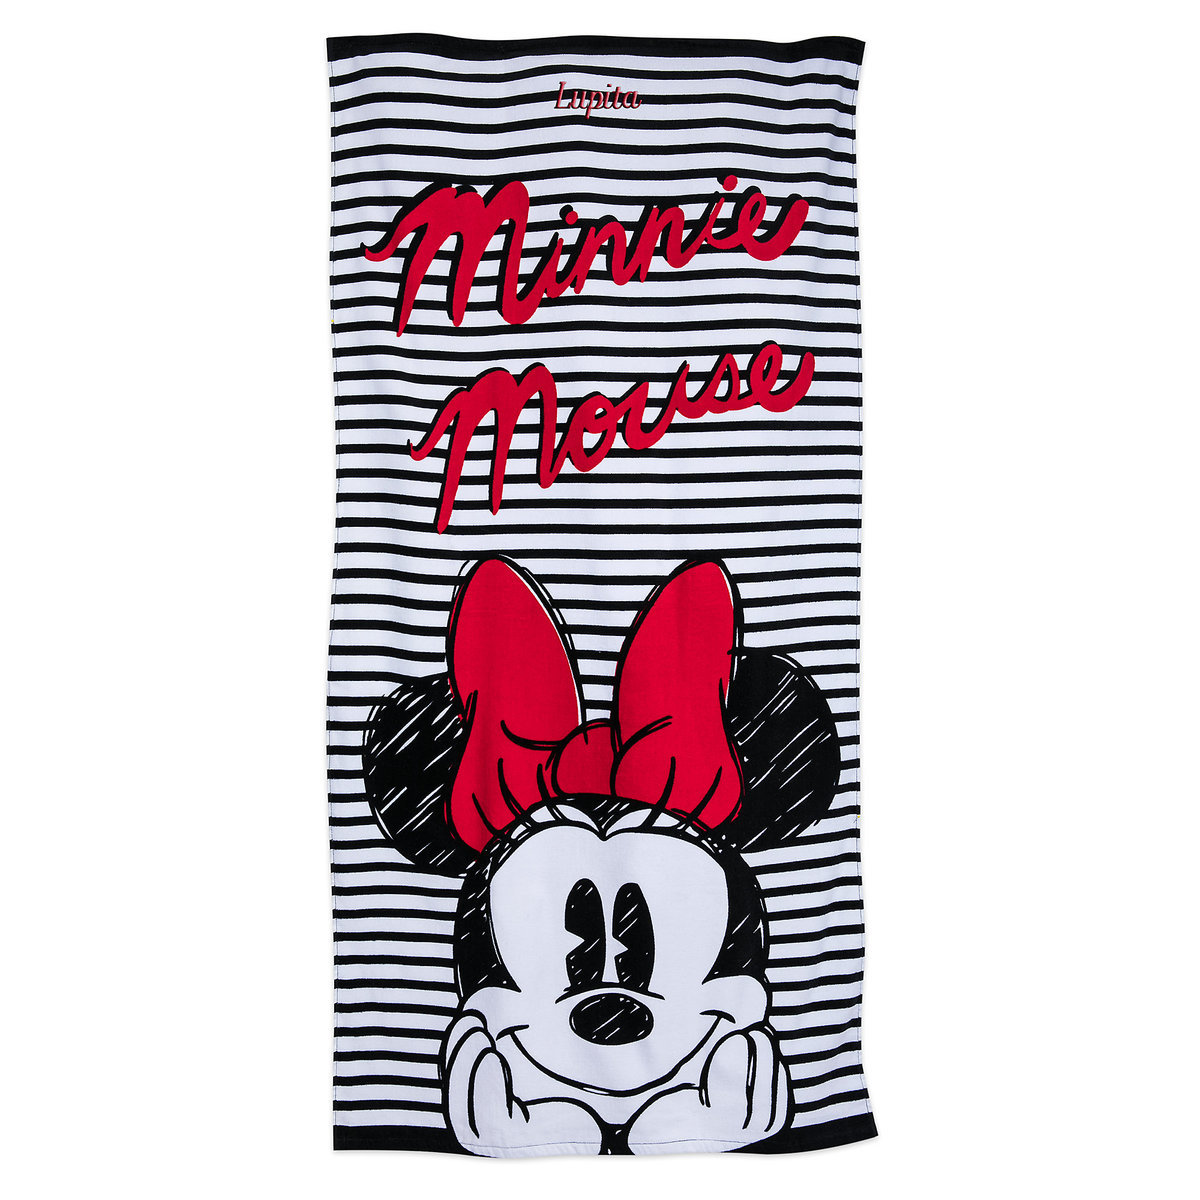 US版　ディズニー ビーチタオル ミニーマウス　 サイズ:147.5×72.5センチ 綿100％ US輸入版 メーカーの画像では、タオルの上部に名前が刺繍されていますが、発送する商品には刺繍はありません。